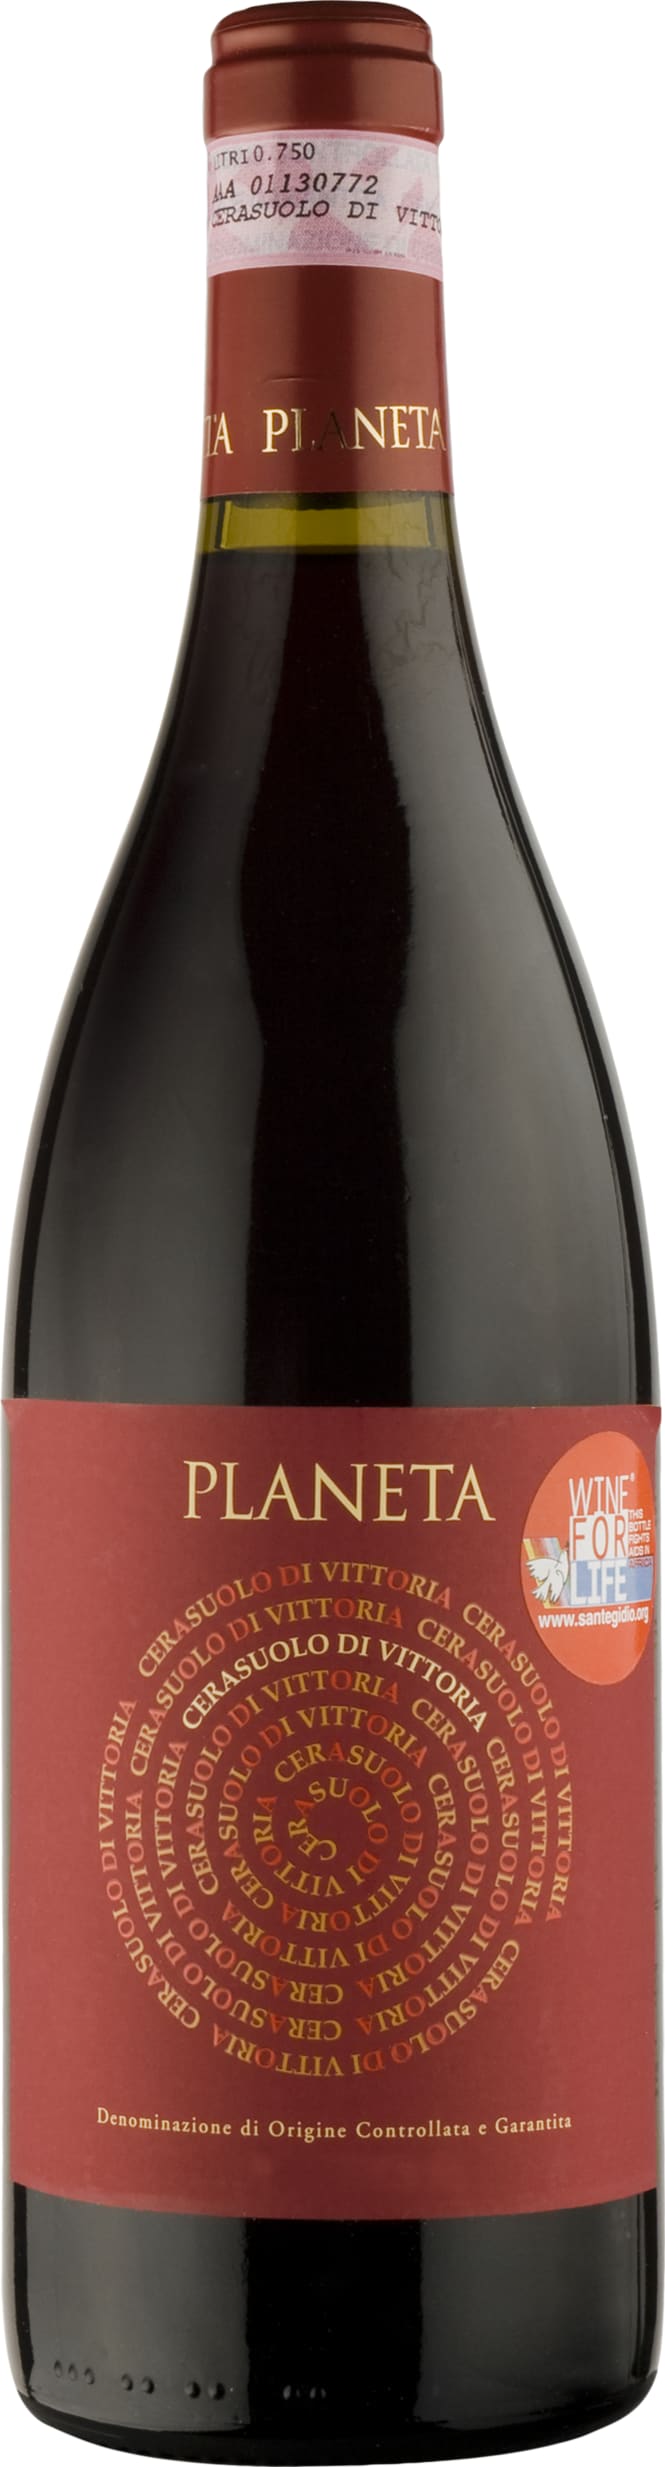 Planeta Cerasuolo di Vittoria 2021 75cl - Buy Planeta Wines from GREAT WINES DIRECT wine shop